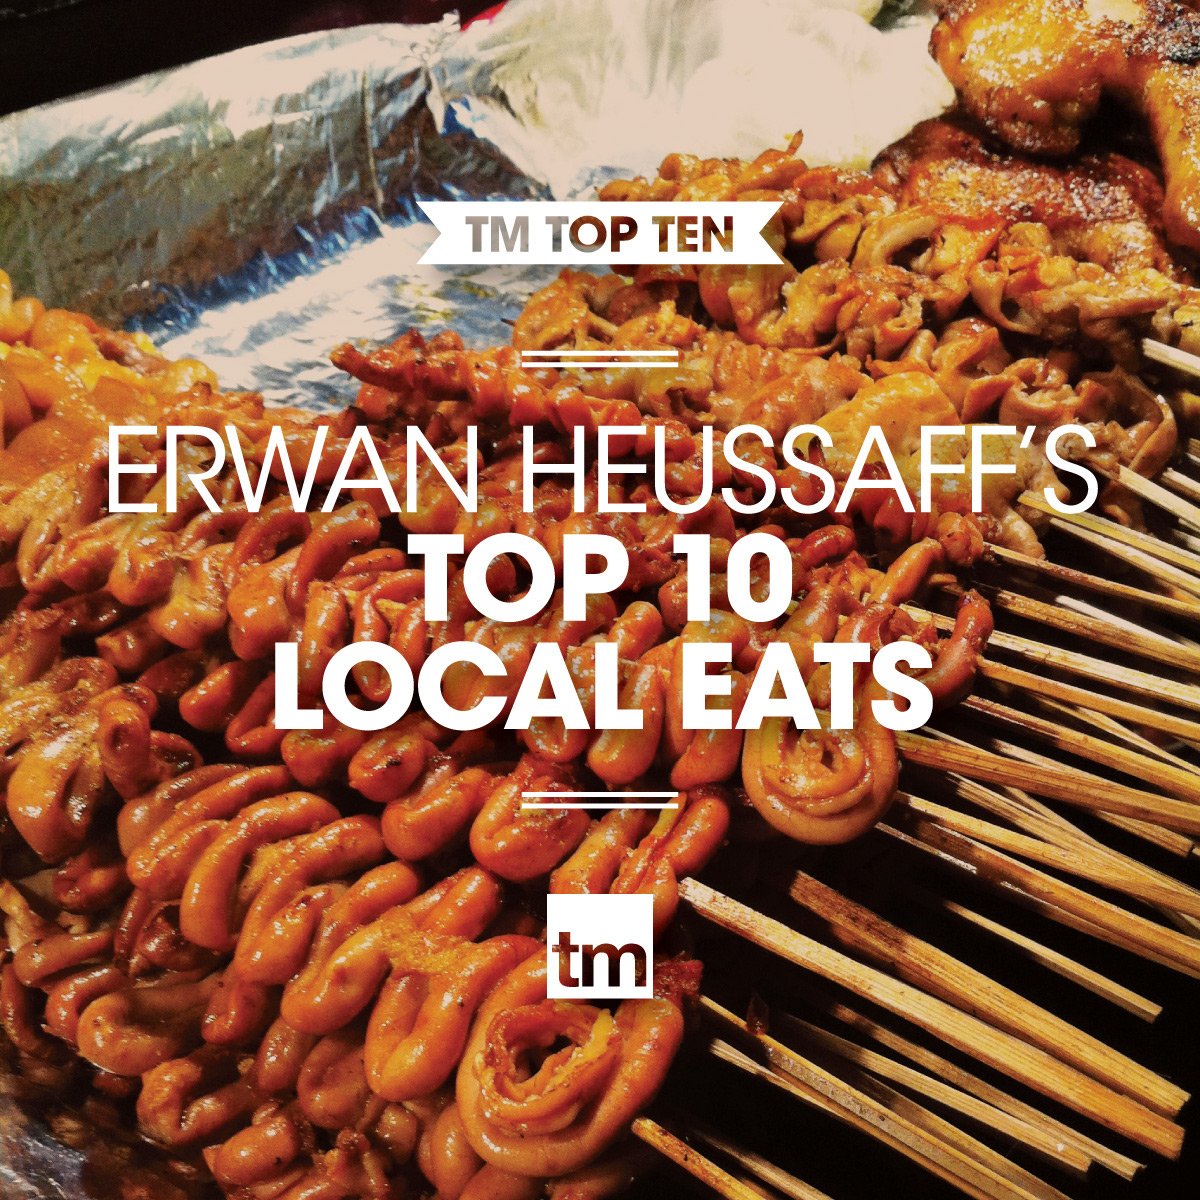 TM-TOP-TEN-erwan-local-eats-01